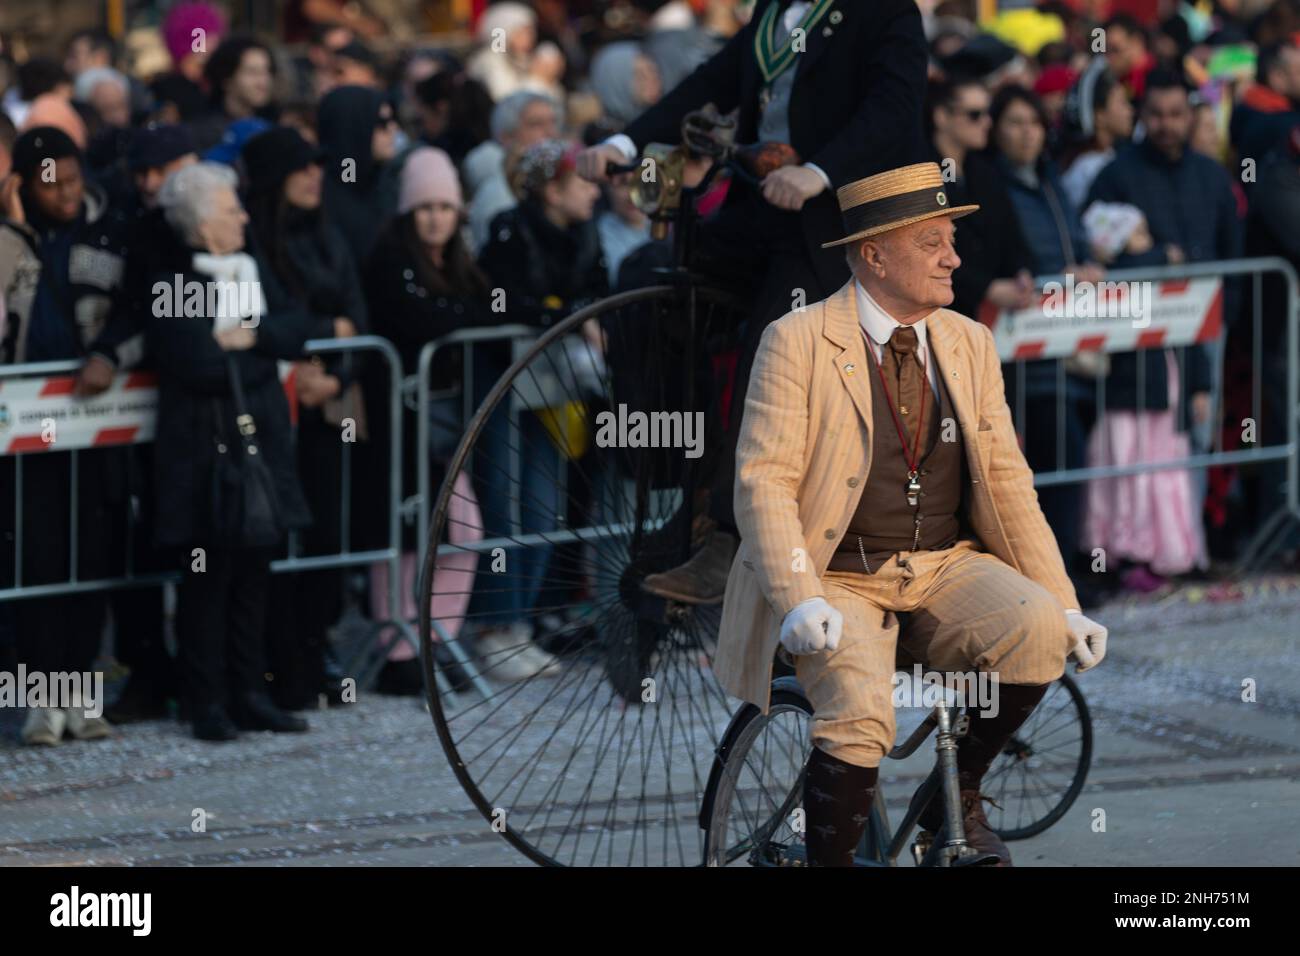 Antique Bicycle Adventure: Carnival-Goer fait une fête de Penny à travers la foule Banque D'Images